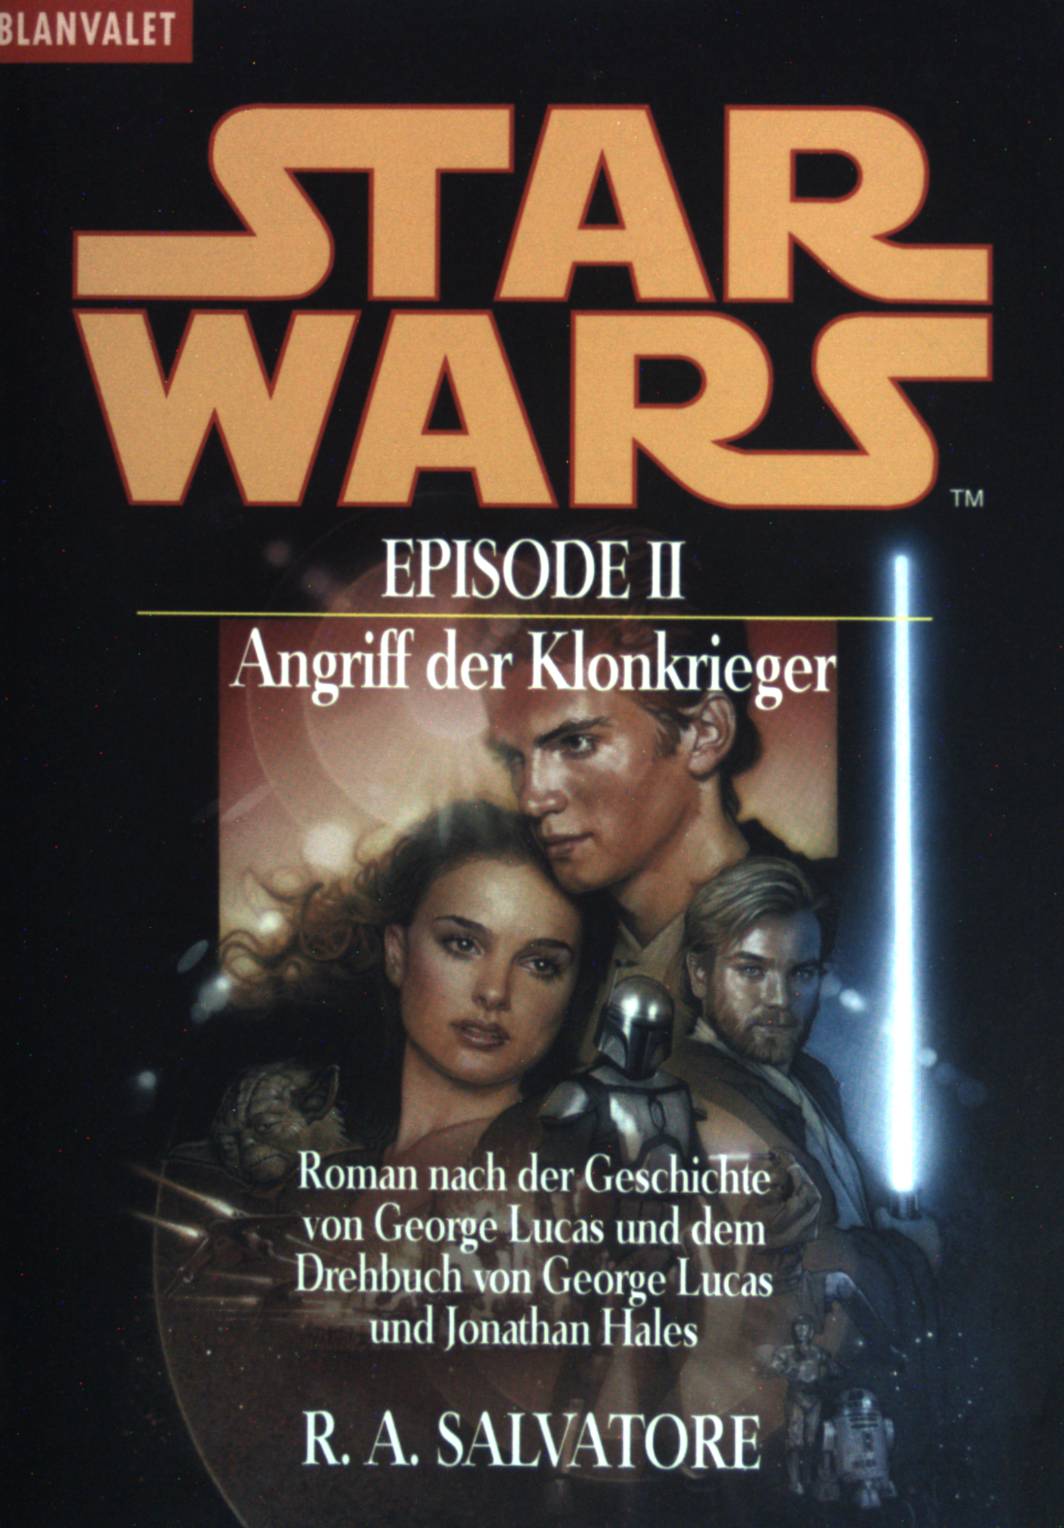 Star wars - Episode II: Angriff der Klonkrieger. (Nr. 35761) Goldmann: Blanvalet - Salvatore, R. A., George (Begr.) Lucas und Regina (Übers.) Winter